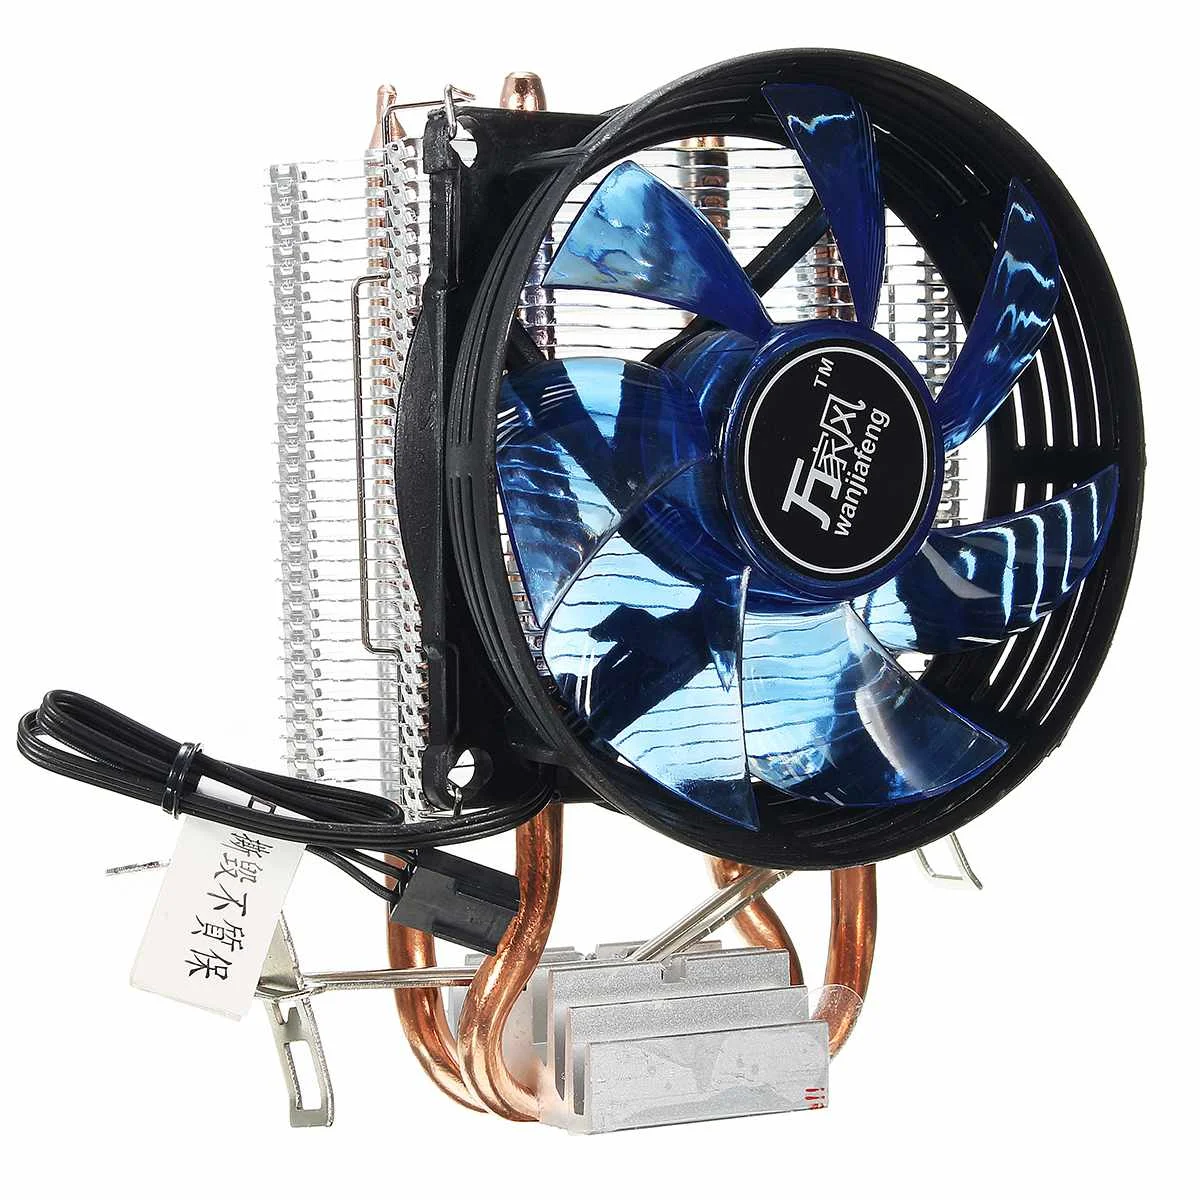 Cobre quente Ventilador de Refrigeração do Núcleo do DIODO emissor de Cooler (Ventoinha de Arrefecimento Silencioso Fan Cooler com Dissipador para processadores Intel Soquete LGA1156/1155/775 AMD AM3